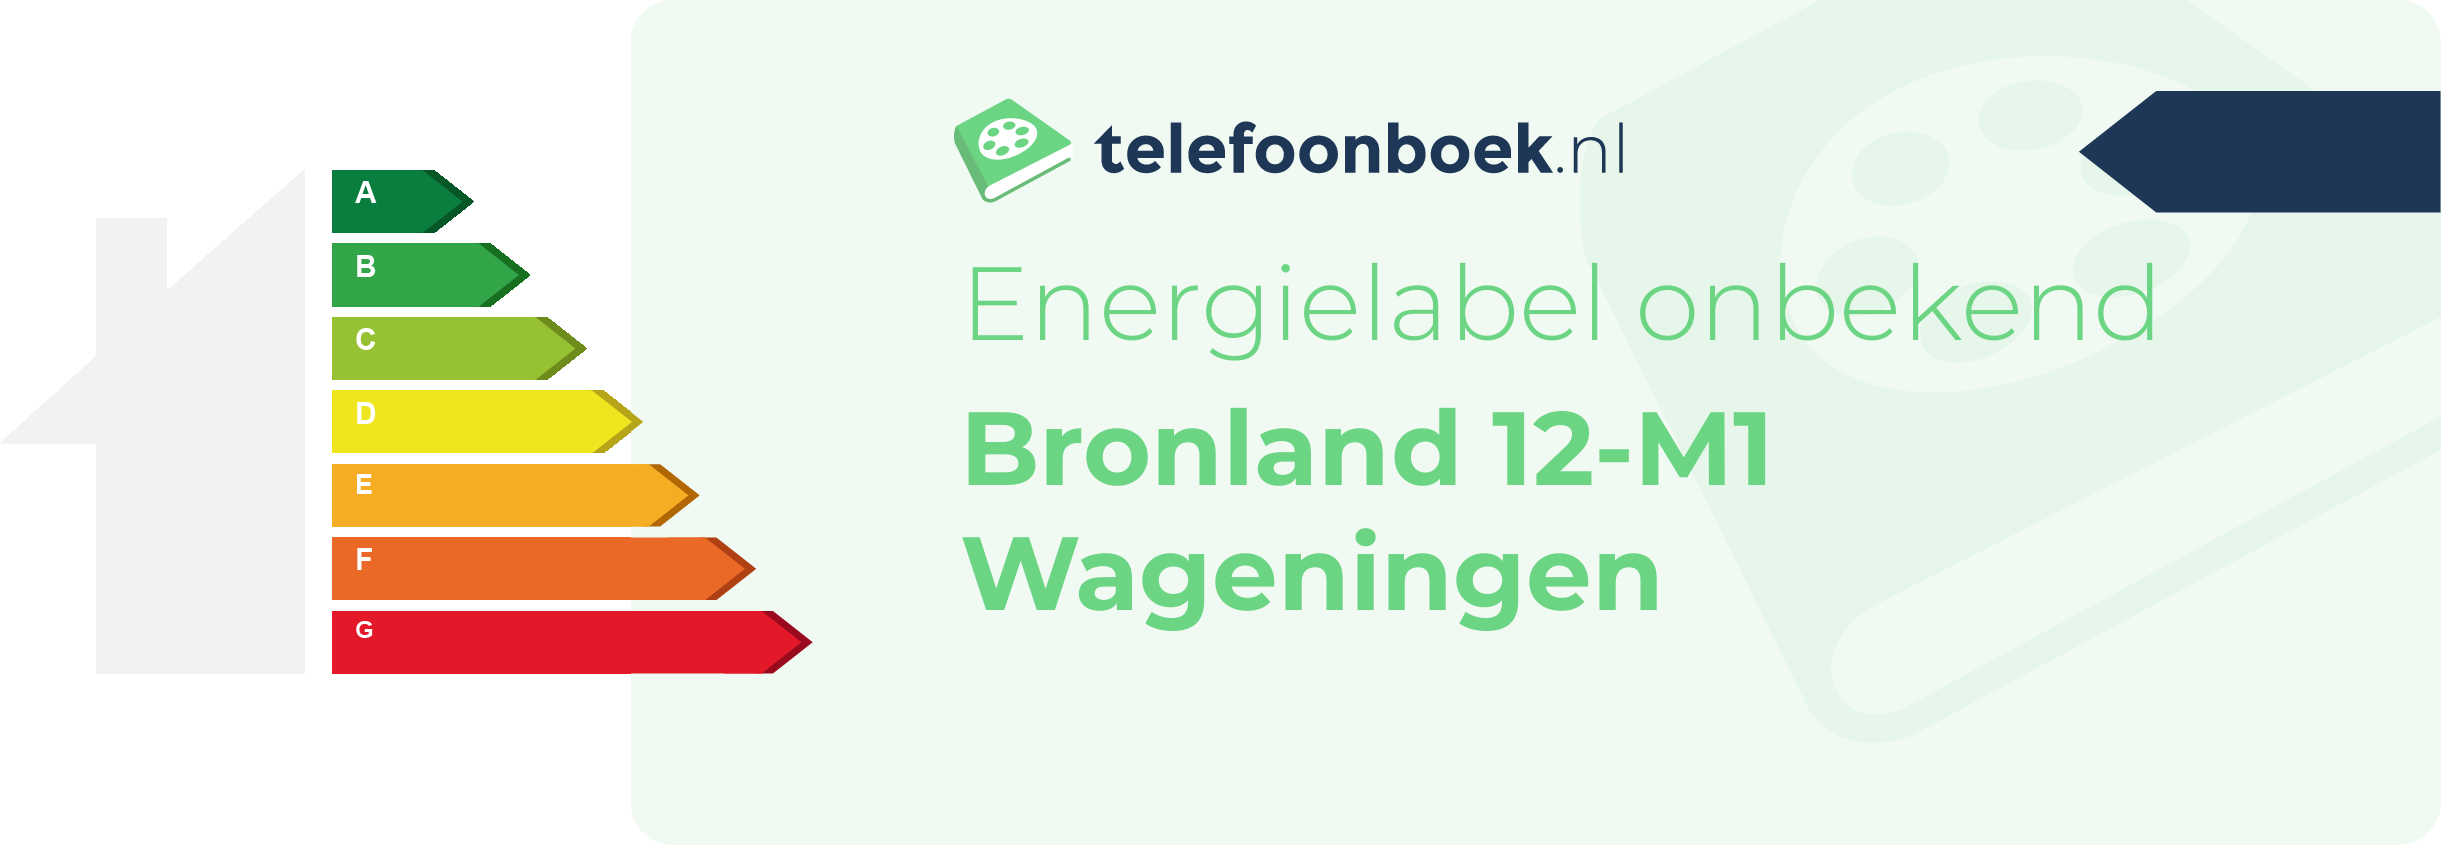 Energielabel Bronland 12-M1 Wageningen